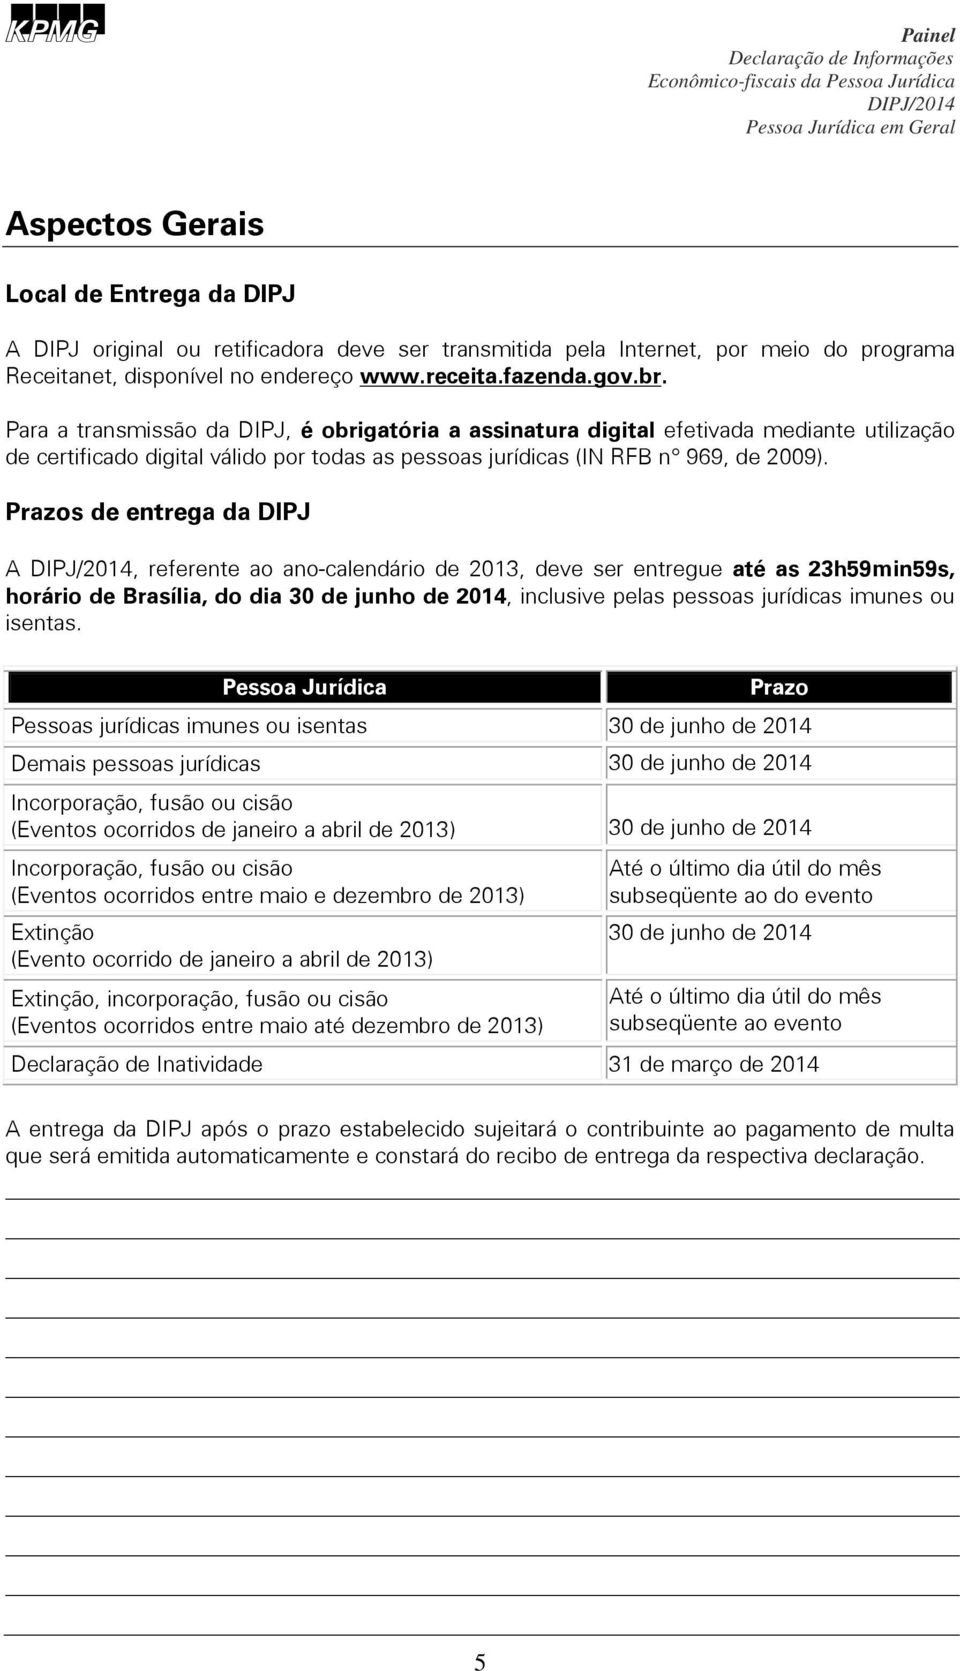 Prazos de entrega da DIPJ A, referente ao ano-calendário de 2013, deve ser entregue até as 23h59min59s, horário de Brasília, do dia 30 de junho de 2014, inclusive pelas pessoas jurídicas imunes ou